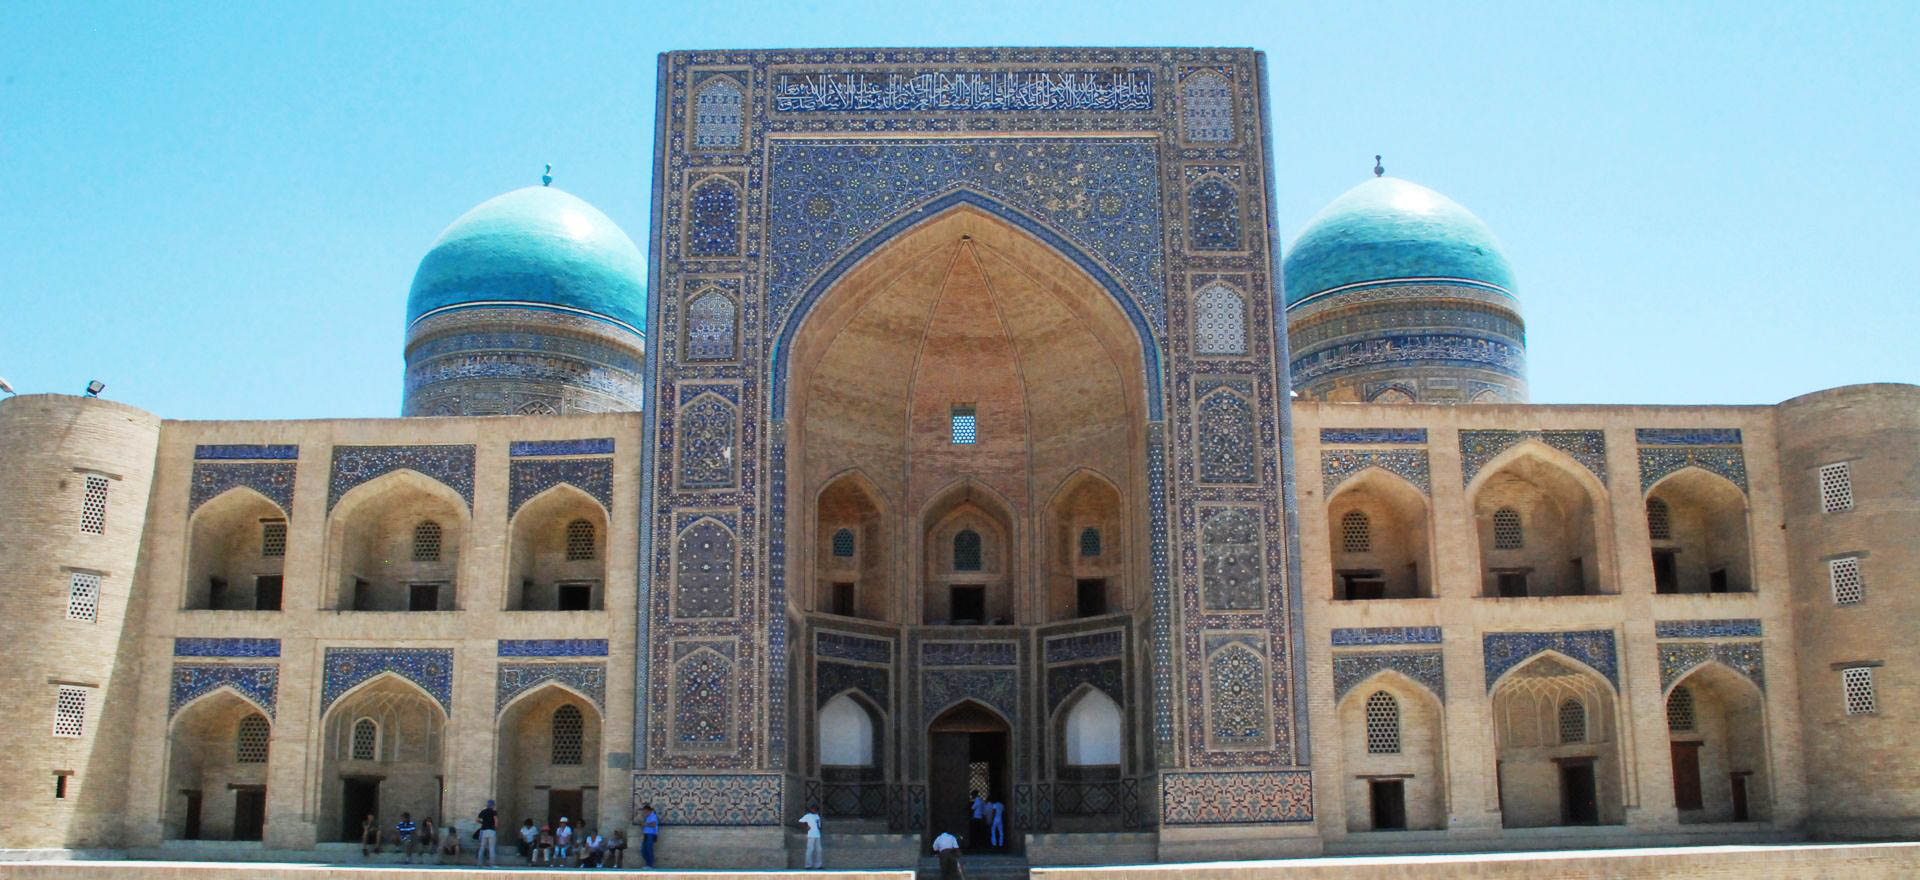 Uzbekistan Holidays and Tours - Islamic architecture in Bukhara